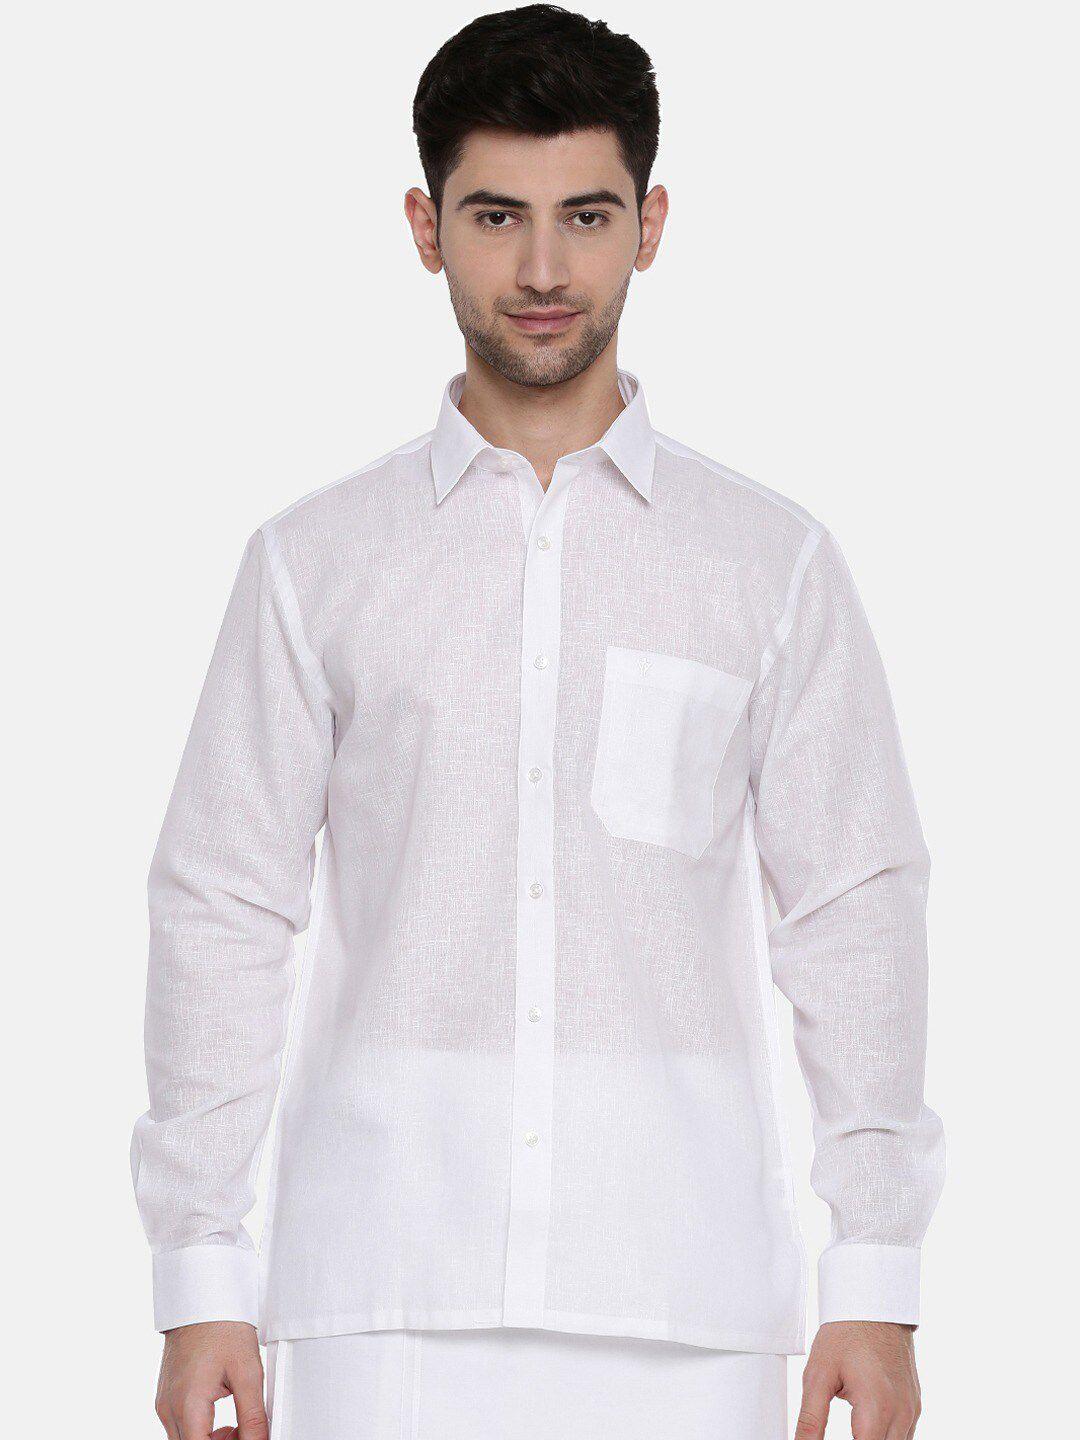 ramraj regular fit shirt collar pure cotton casual shirt